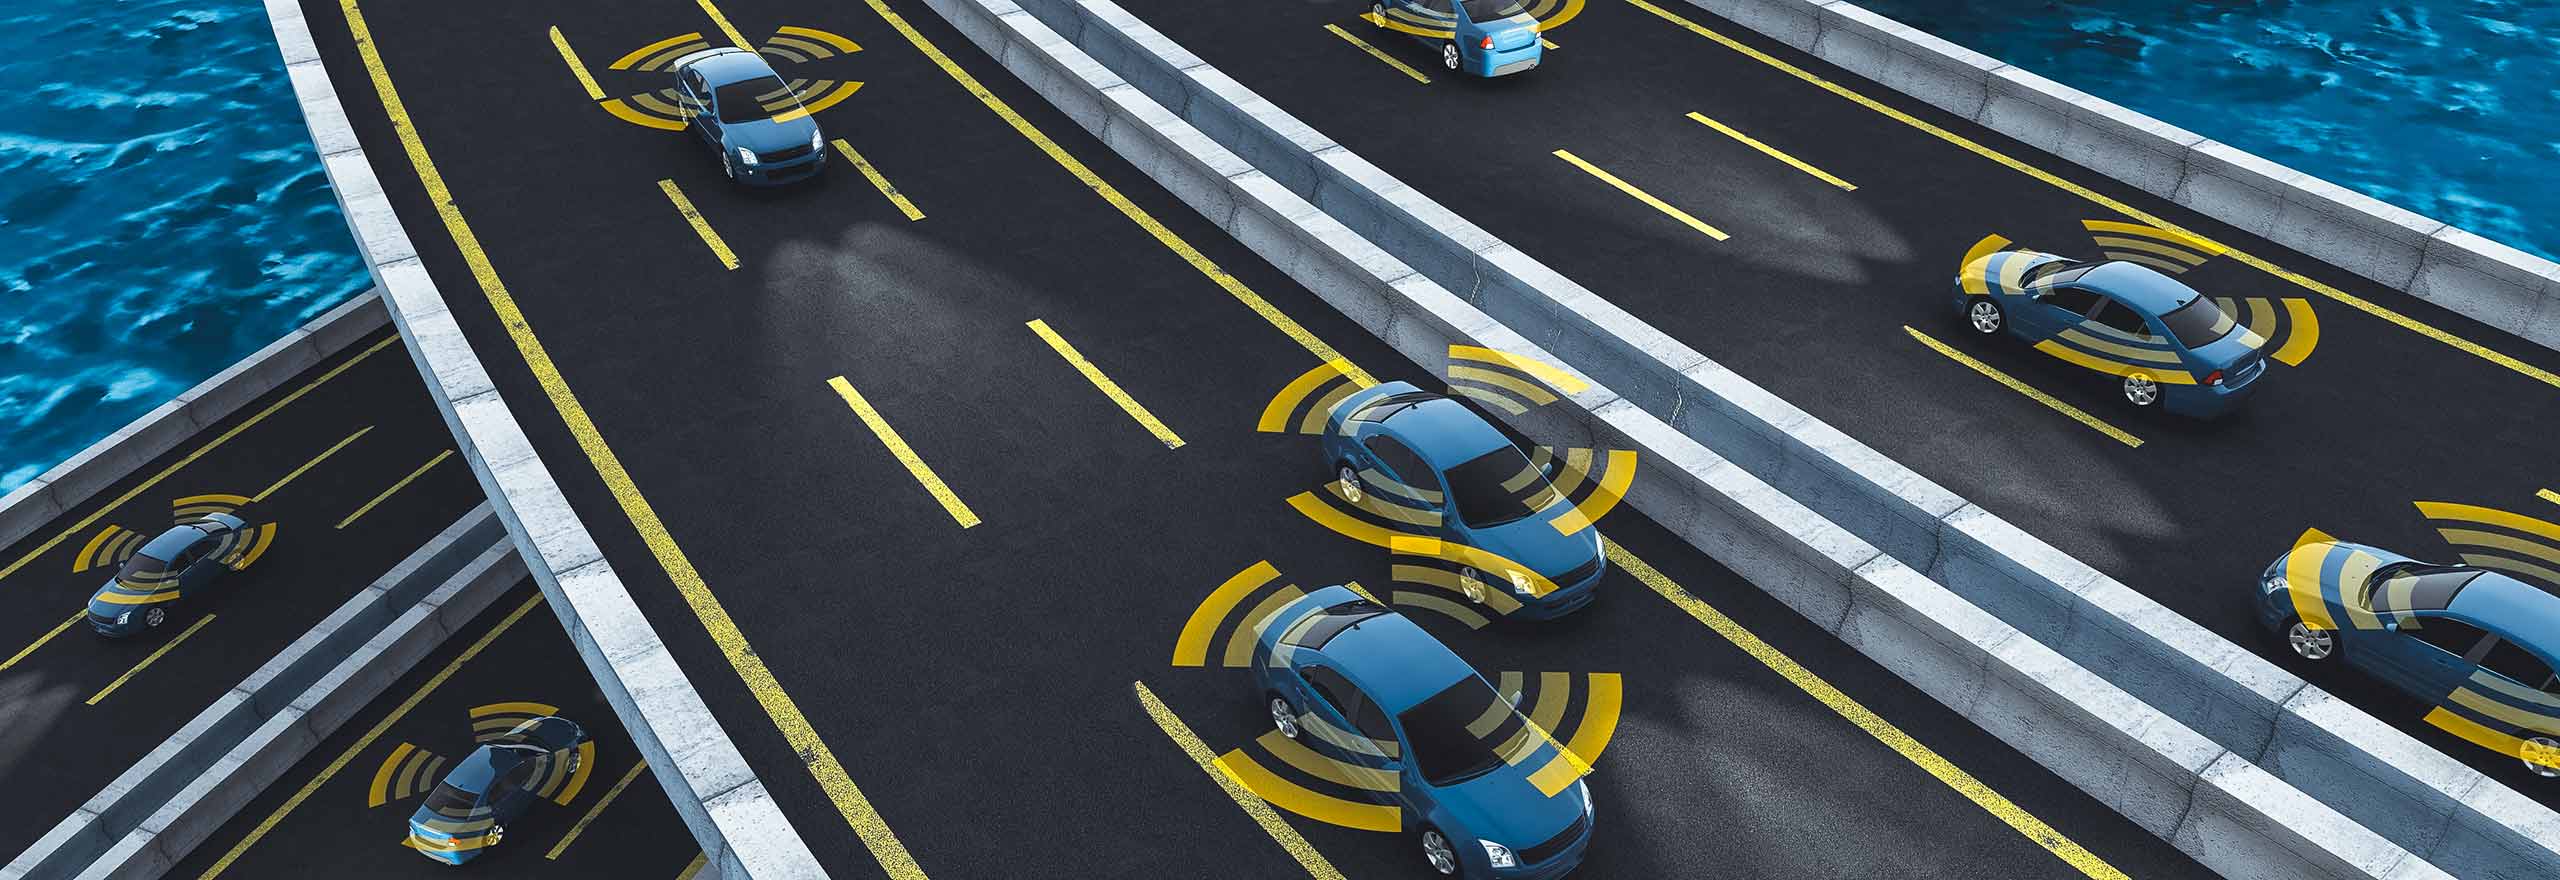 Voertuigen op een brug met rondom oranje en witte afbeeldingen van autonome simulatiegegevens